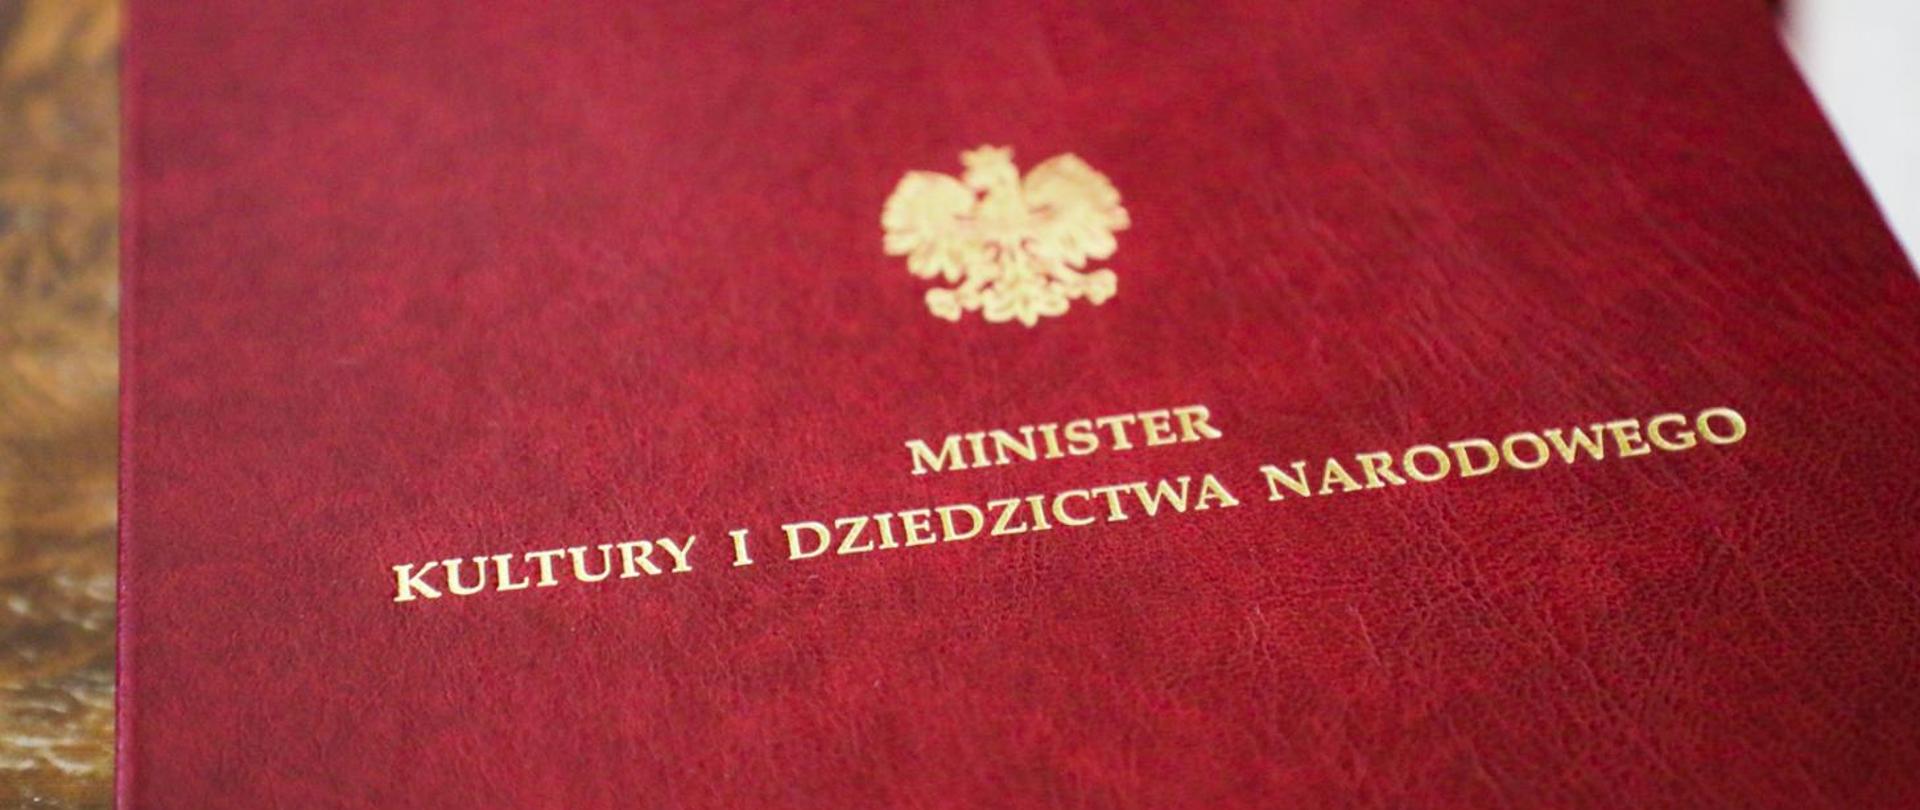 grafika przedstawia fragment czerwonej teczki ze złotym orłem po środku oraz napisem z napisem minister kultury i dziedzictwa narodowego